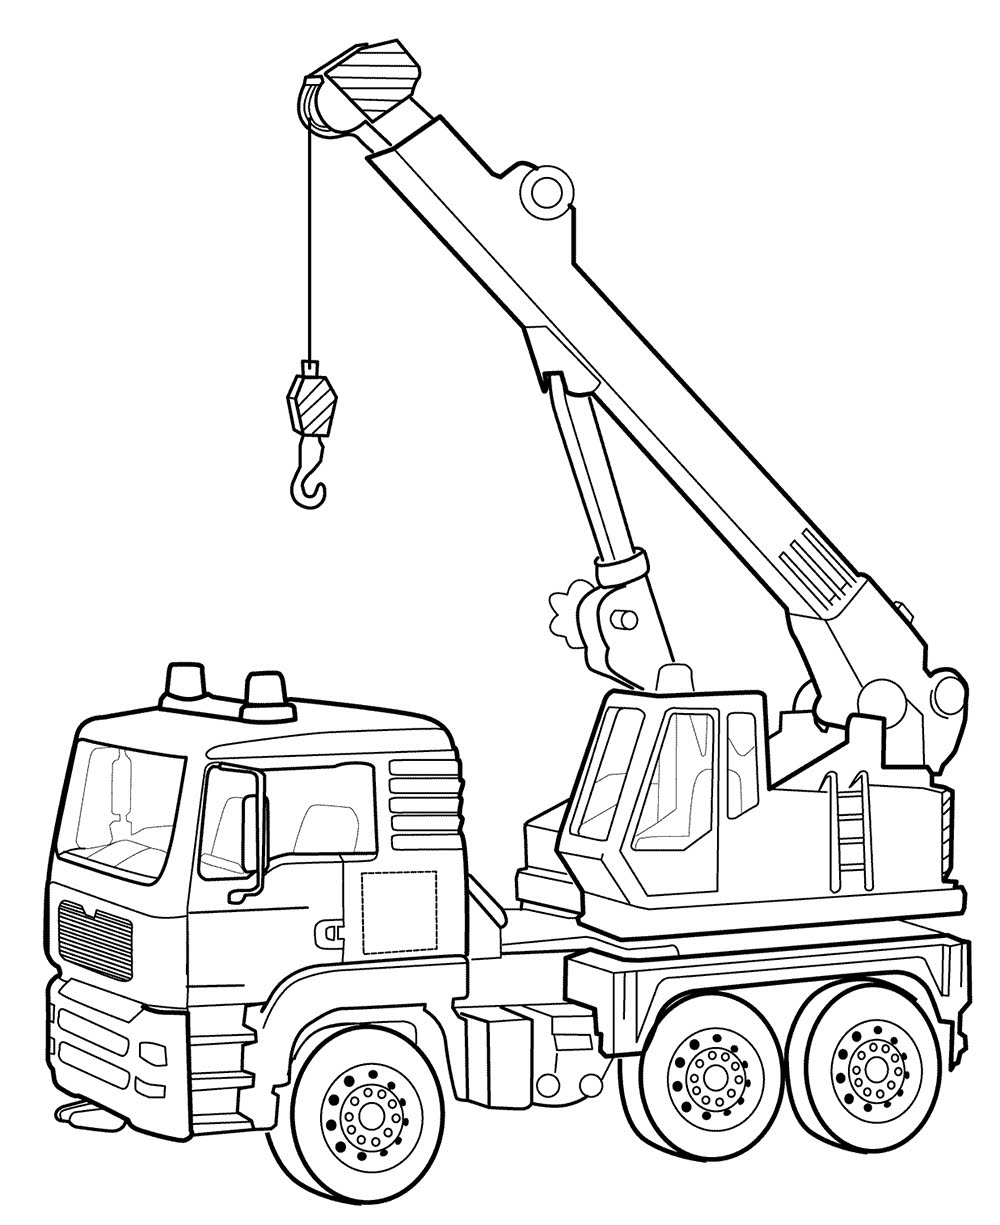 Xe Vẽ Cần Cẩu  liên hợp vận chuyển hàng hóa png tải về  Miễn phí trong  suốt Đen Và Trắng png Tải về